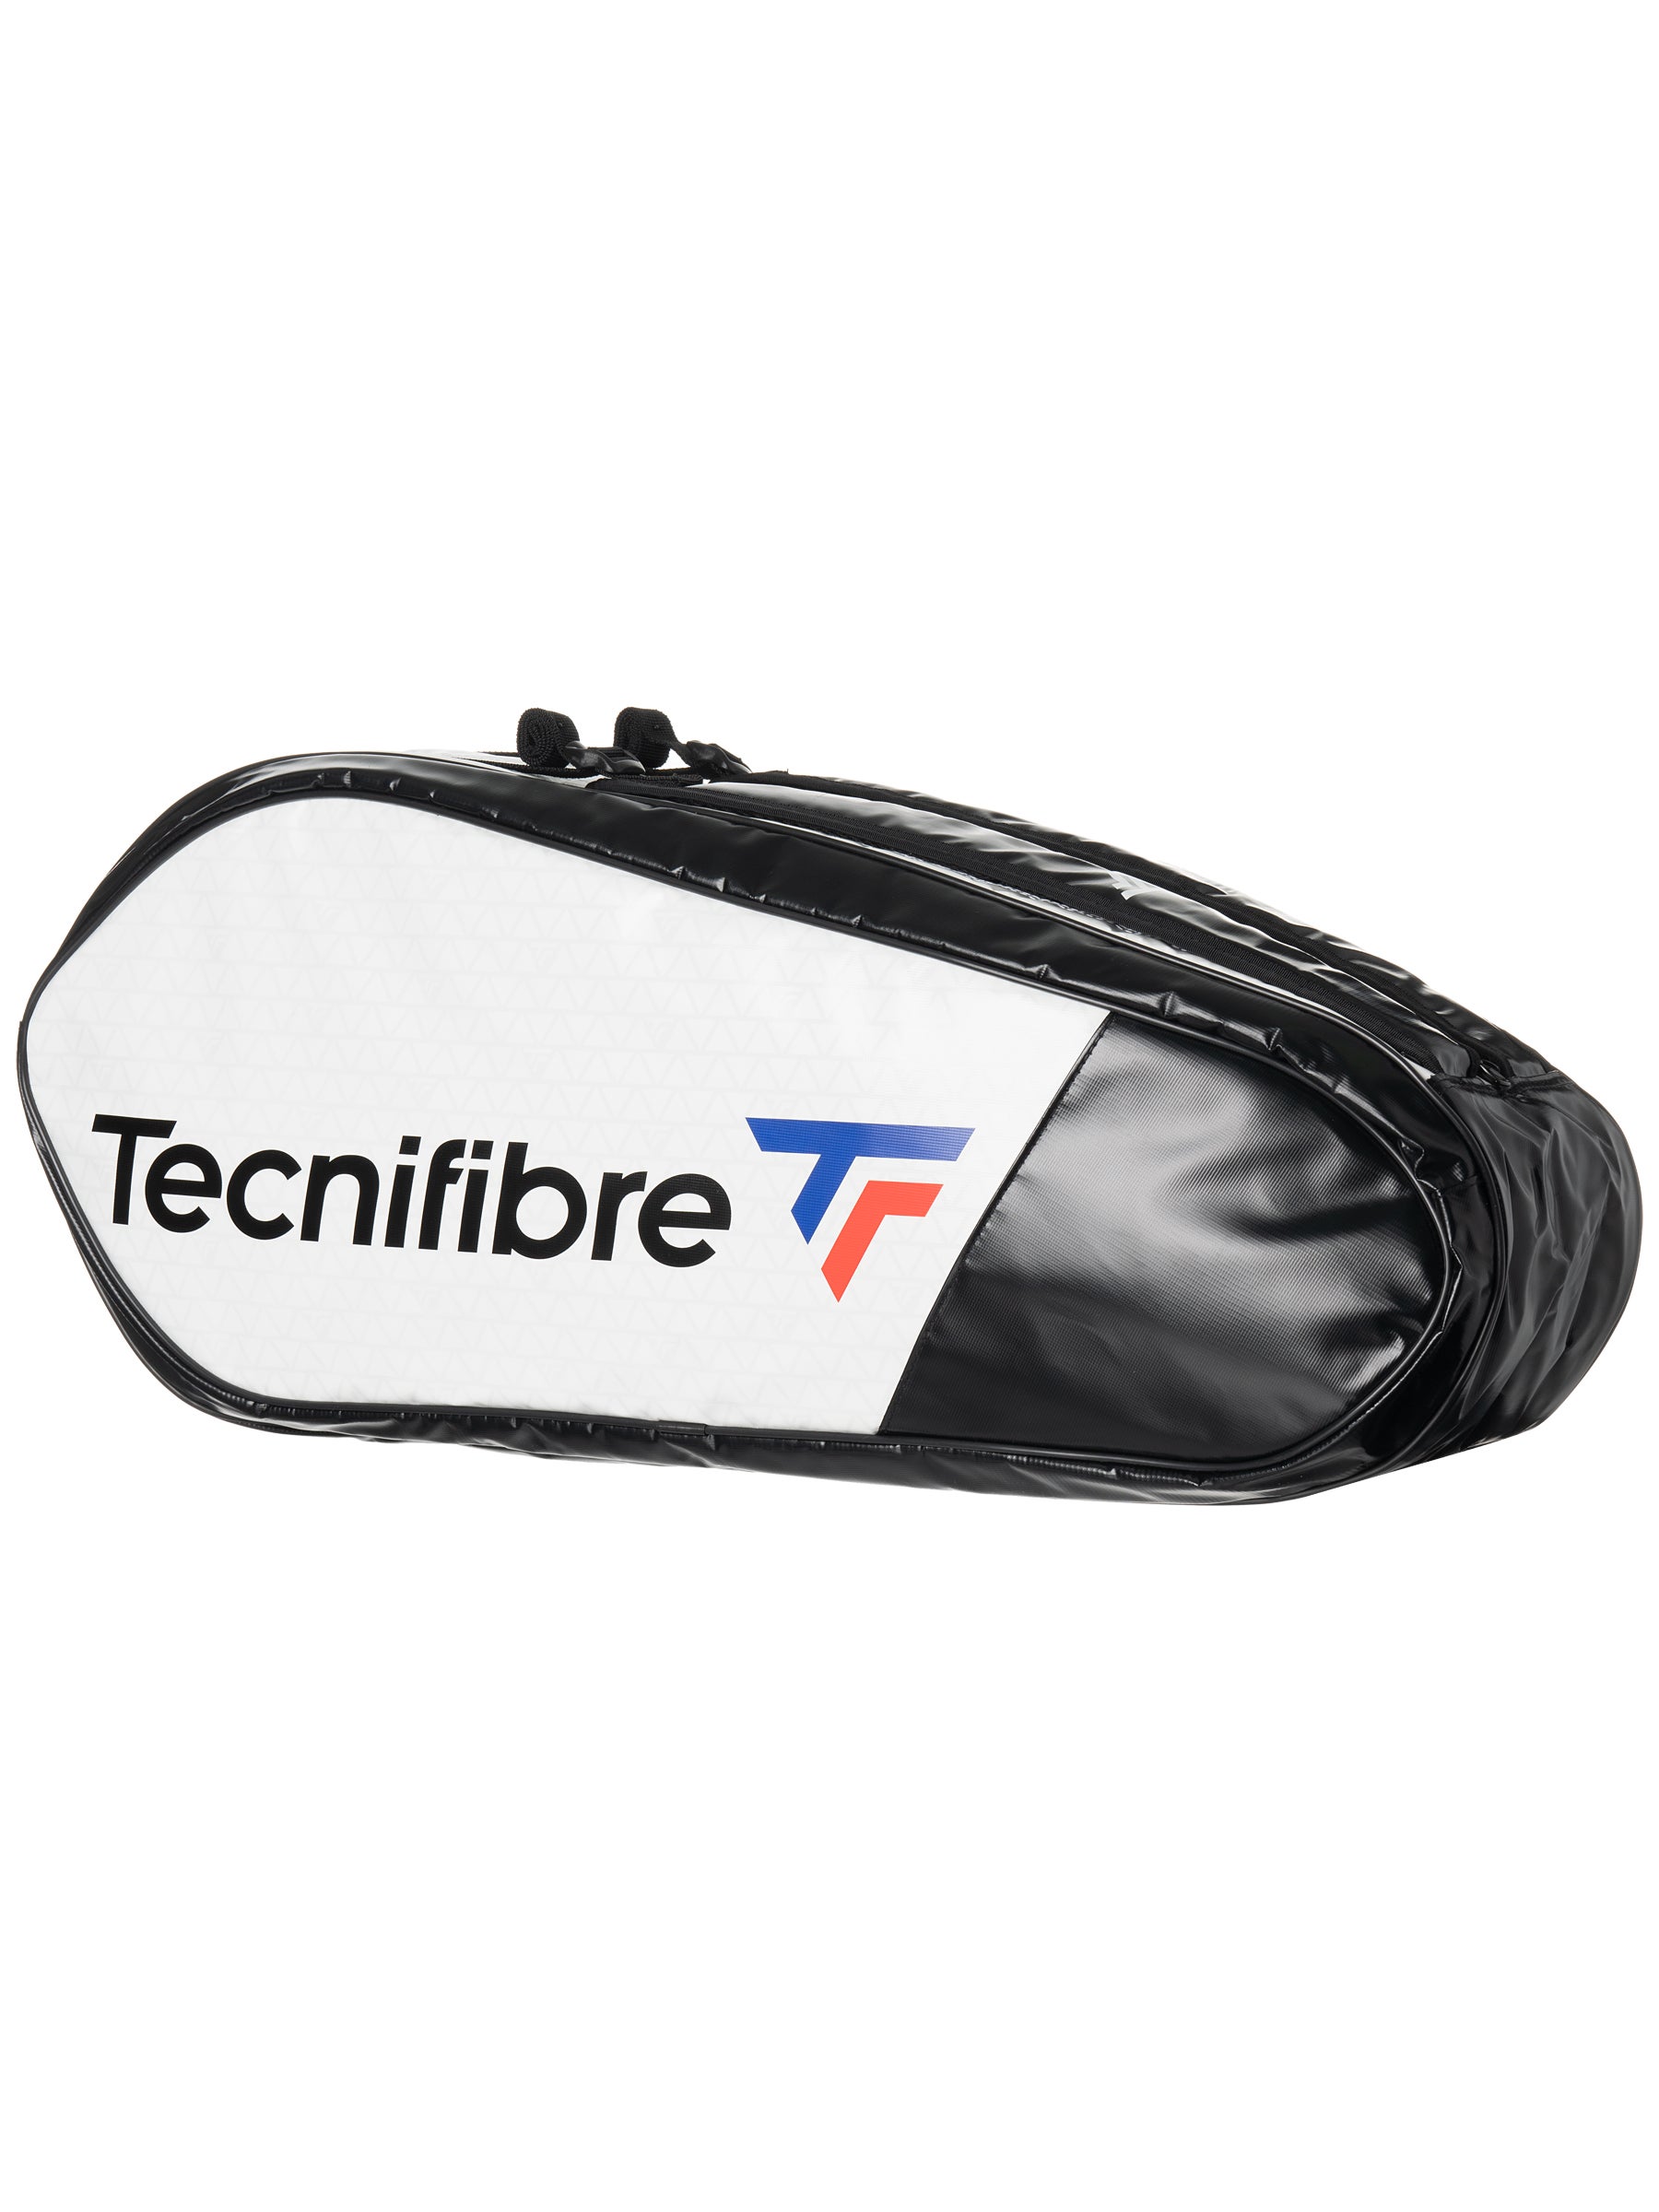 Tecnifibre Tour Endurance 6R Bag 2019 Black 